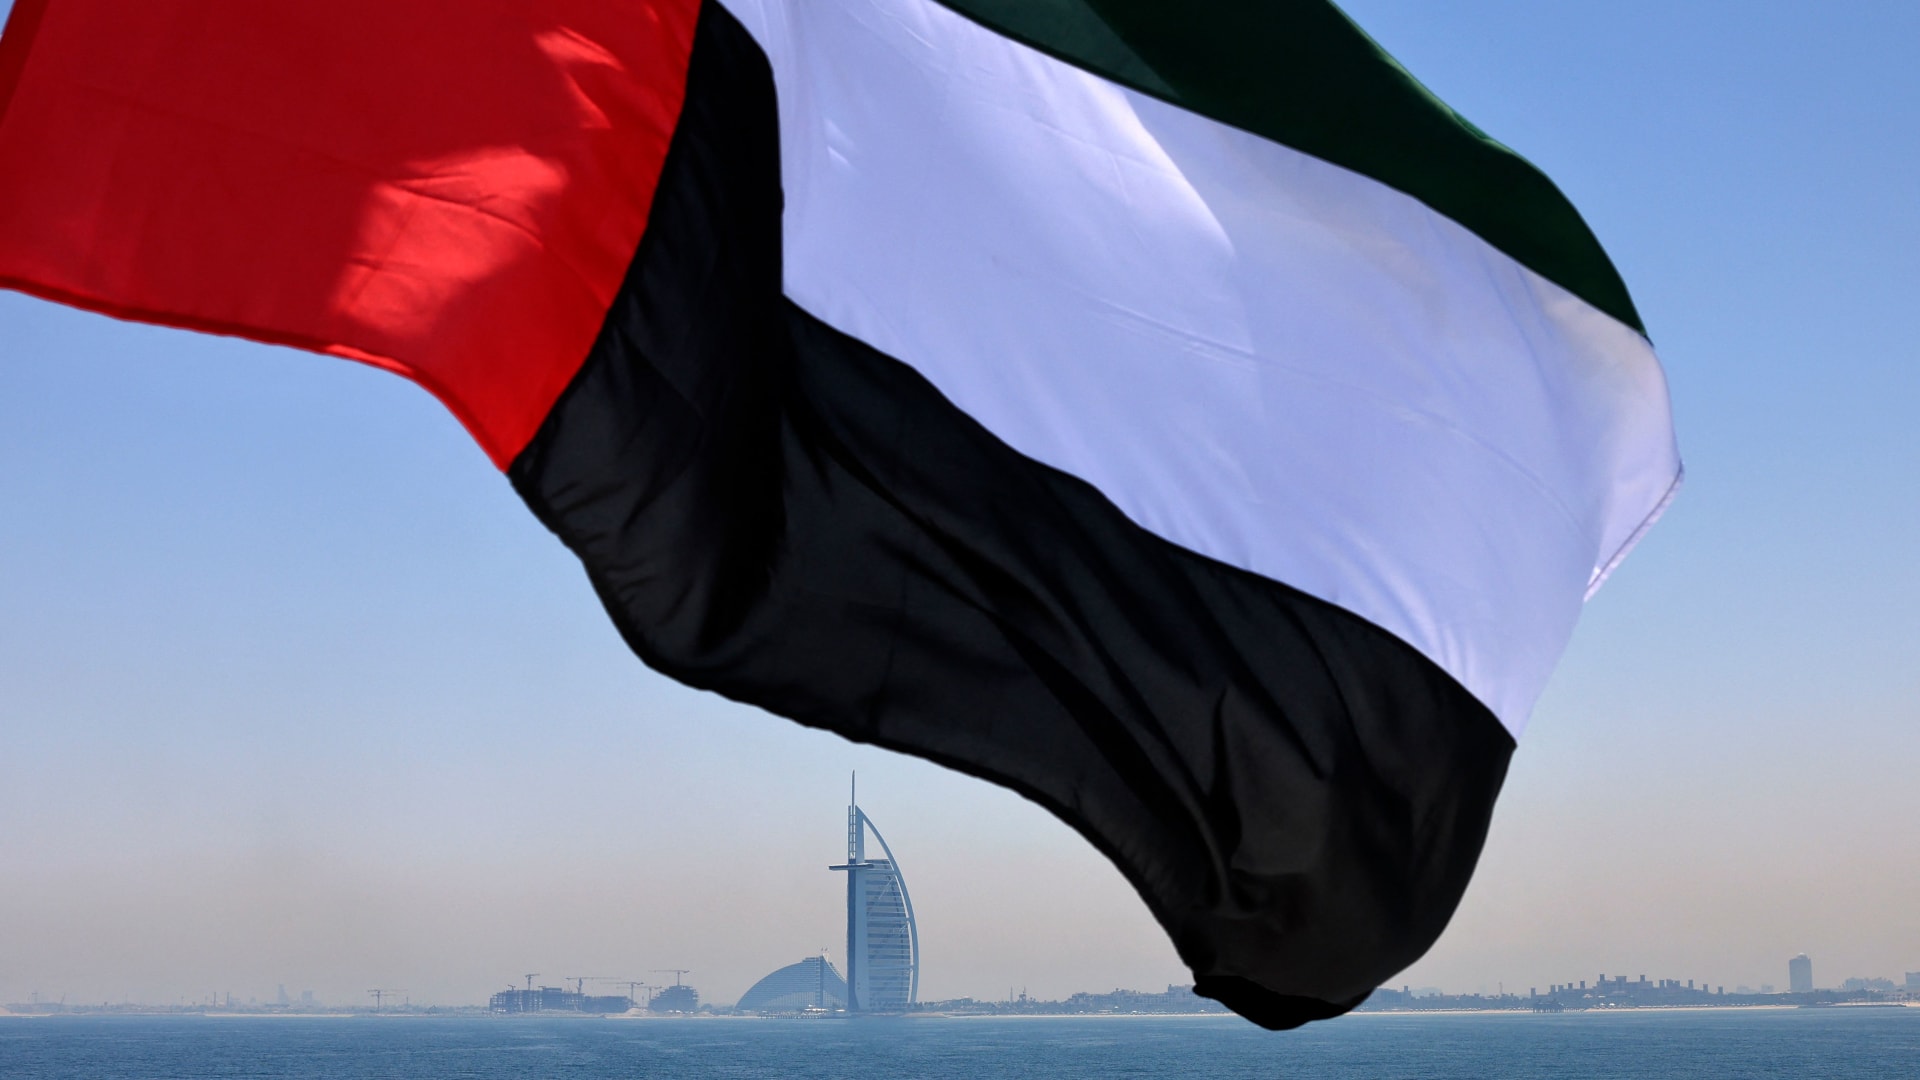  علمًا إماراتيًا يرفرف فوق مرسى دبي مع فندق برج العرب في الخلفية